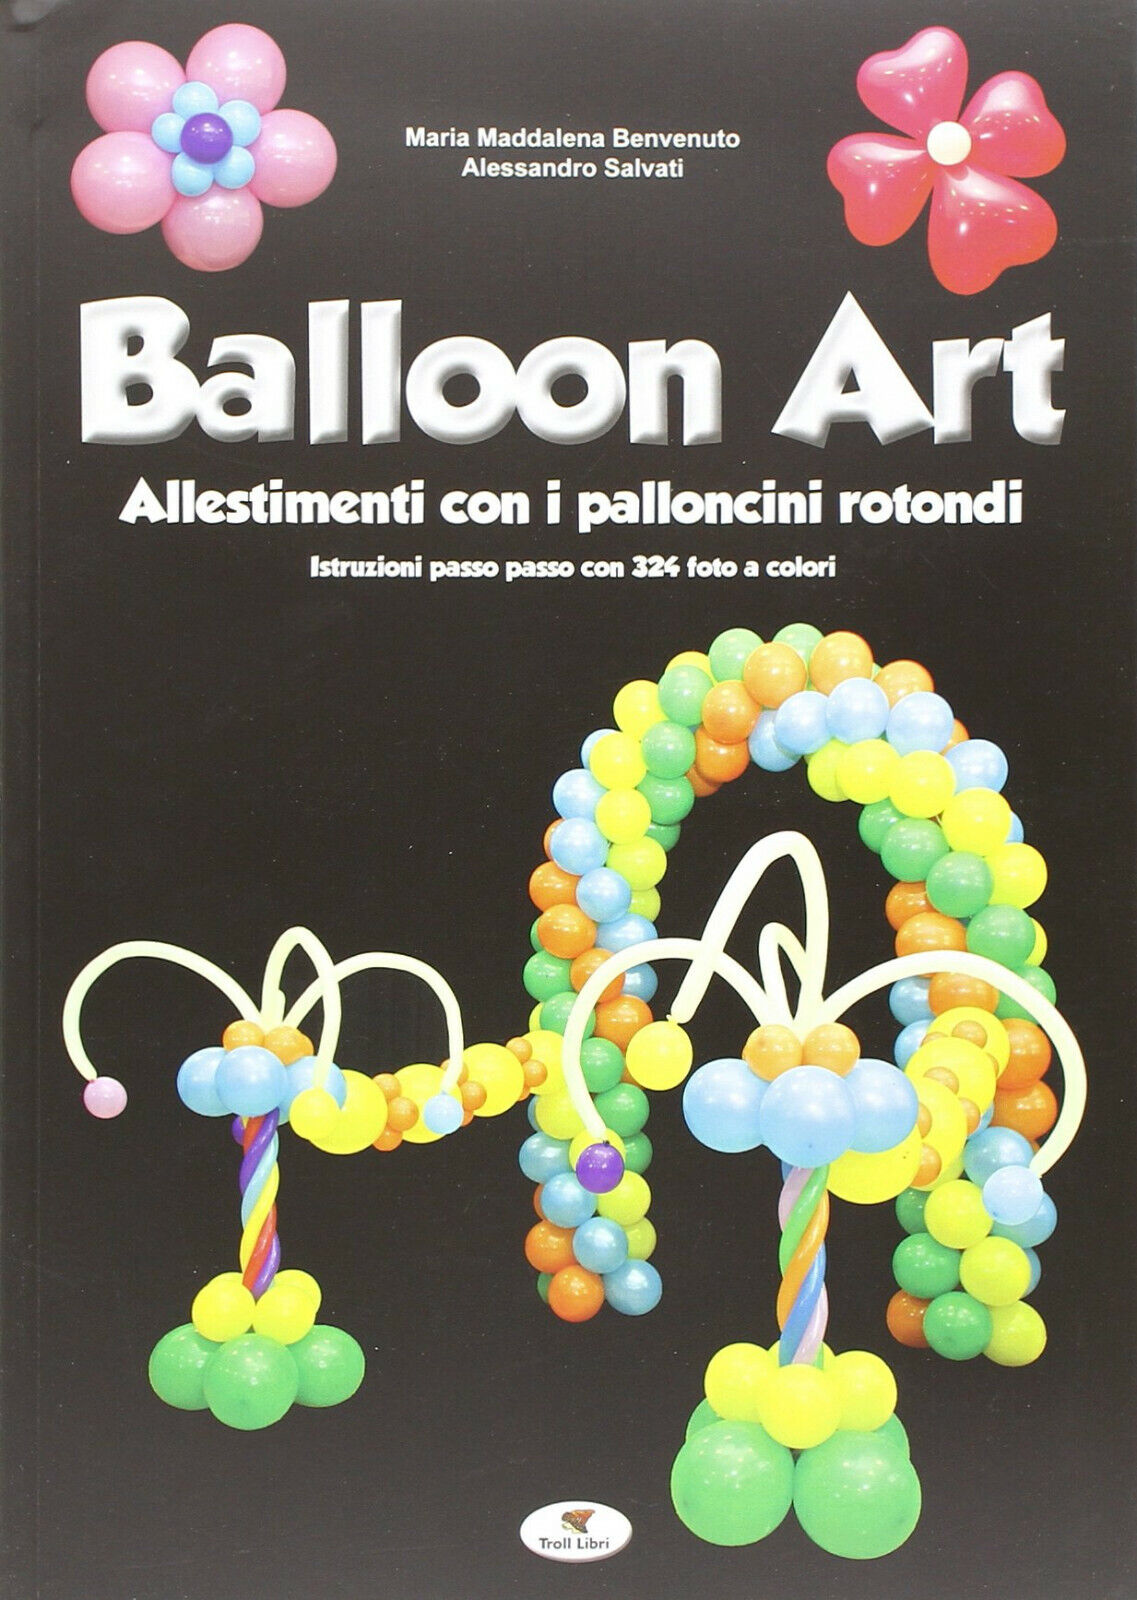 Balloon art - M. Maddalena Benvenuto, Alessandro Salvati - Troll Libri, 2014